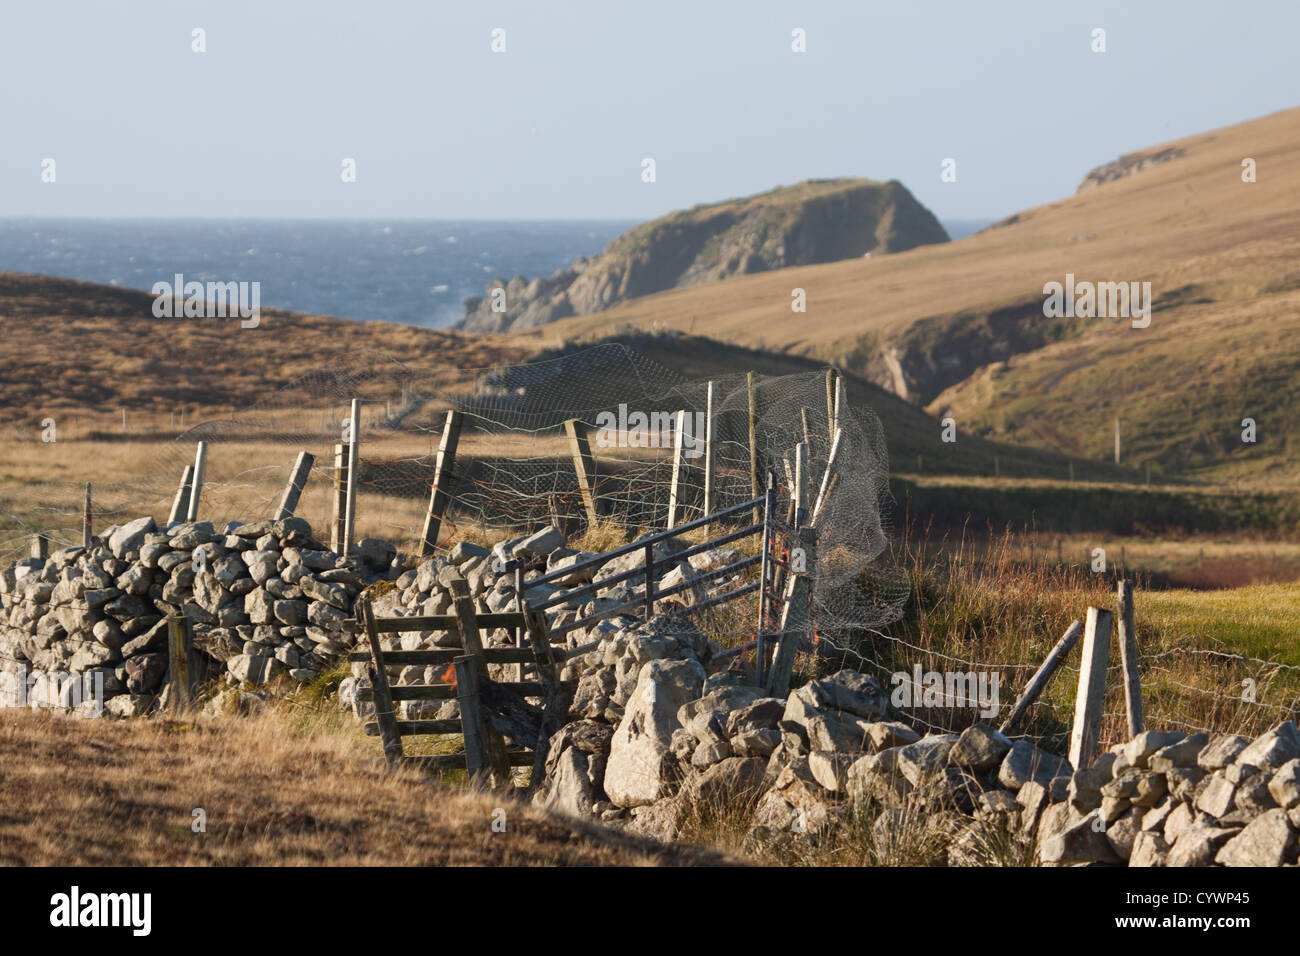 Dale de murs, dans la vallée en direction de Voe Dale et l'océan Atlantique, les îles Shetland Banque D'Images